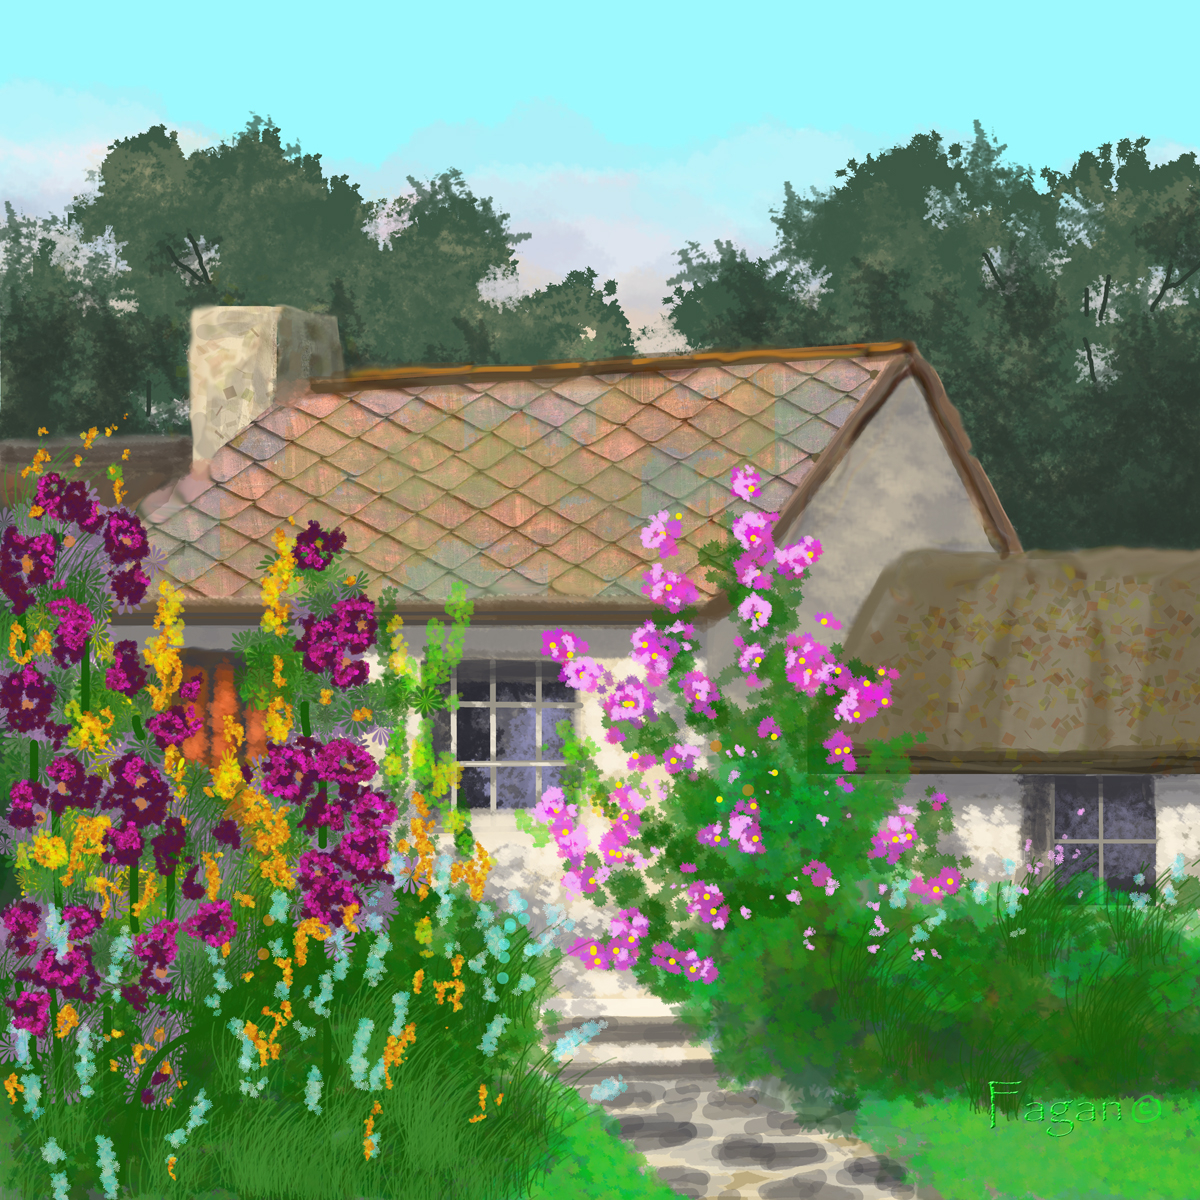 Digital "Summer Cottage"